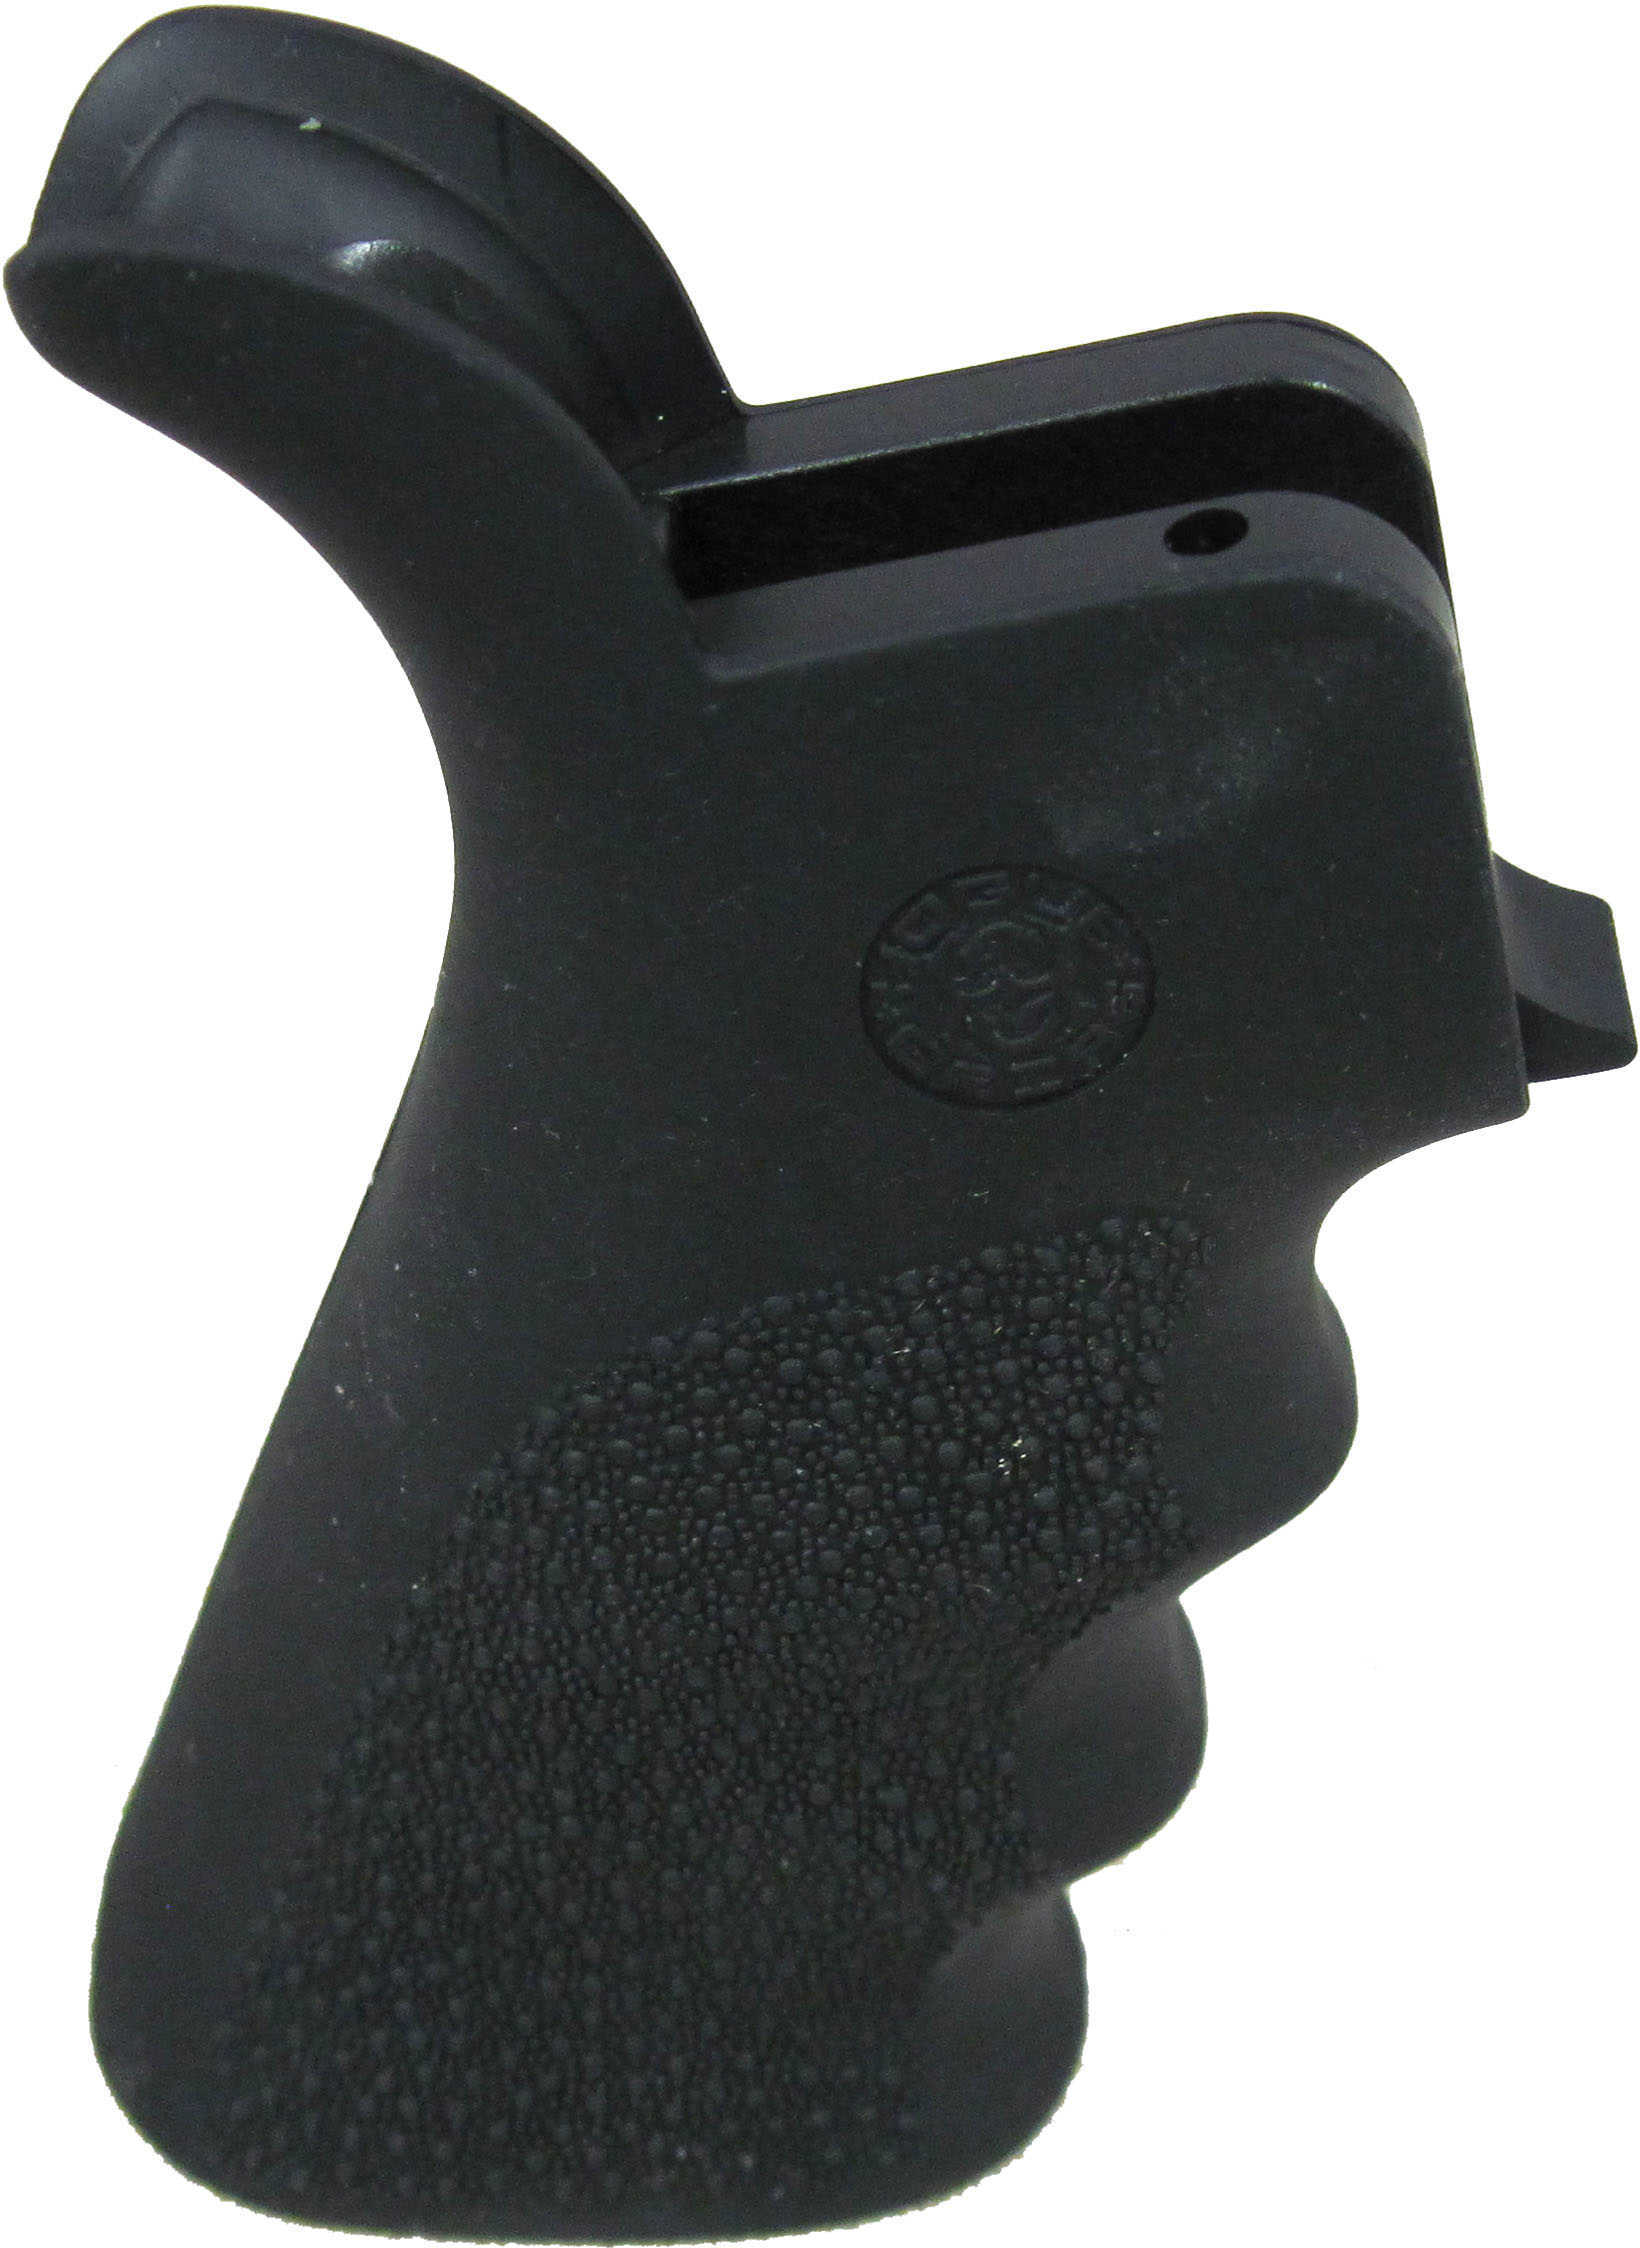 Overmold Beavertail Pistol Grip-Black